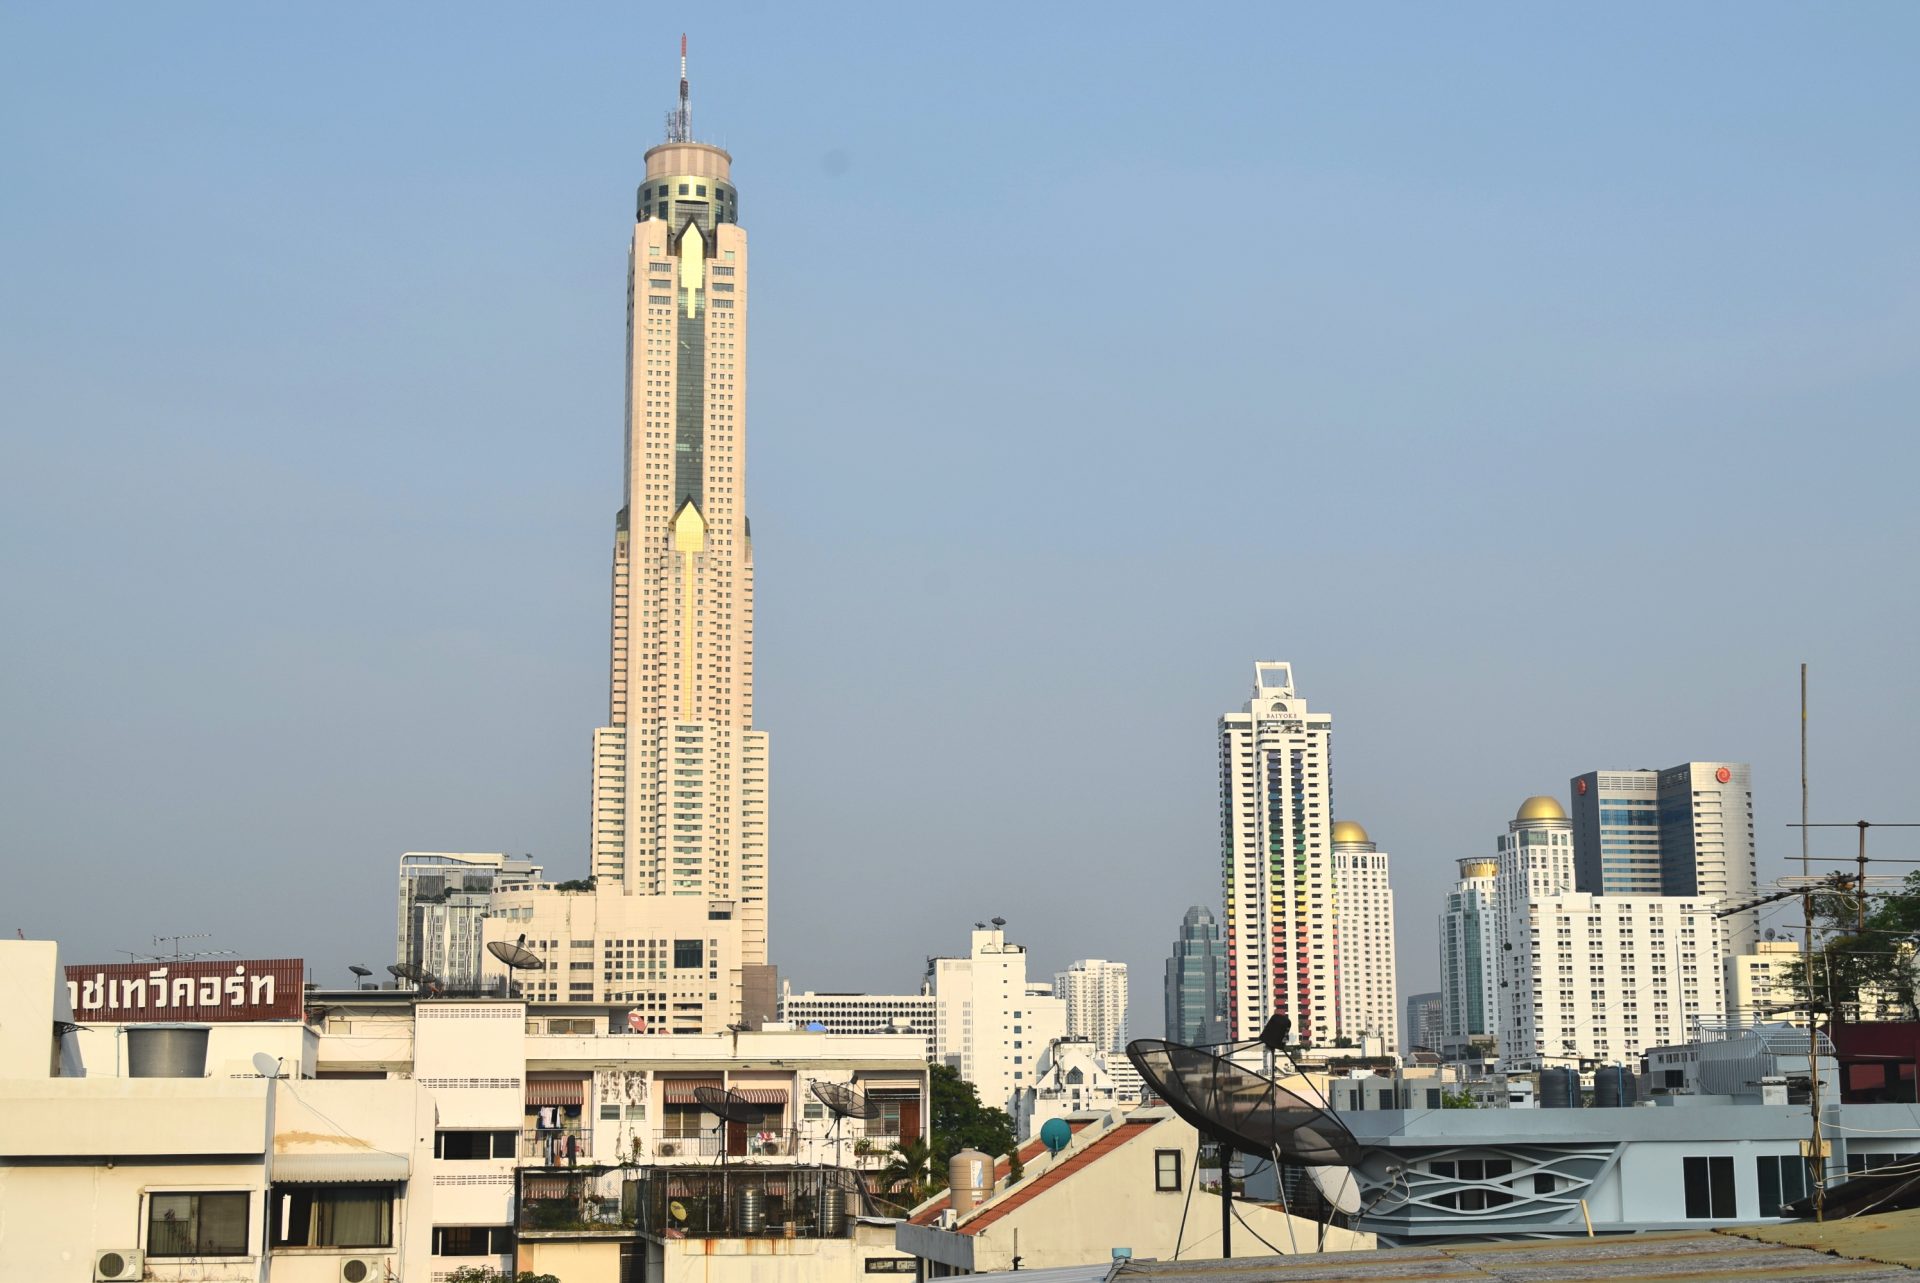 Самое высокое здание в бангкоке